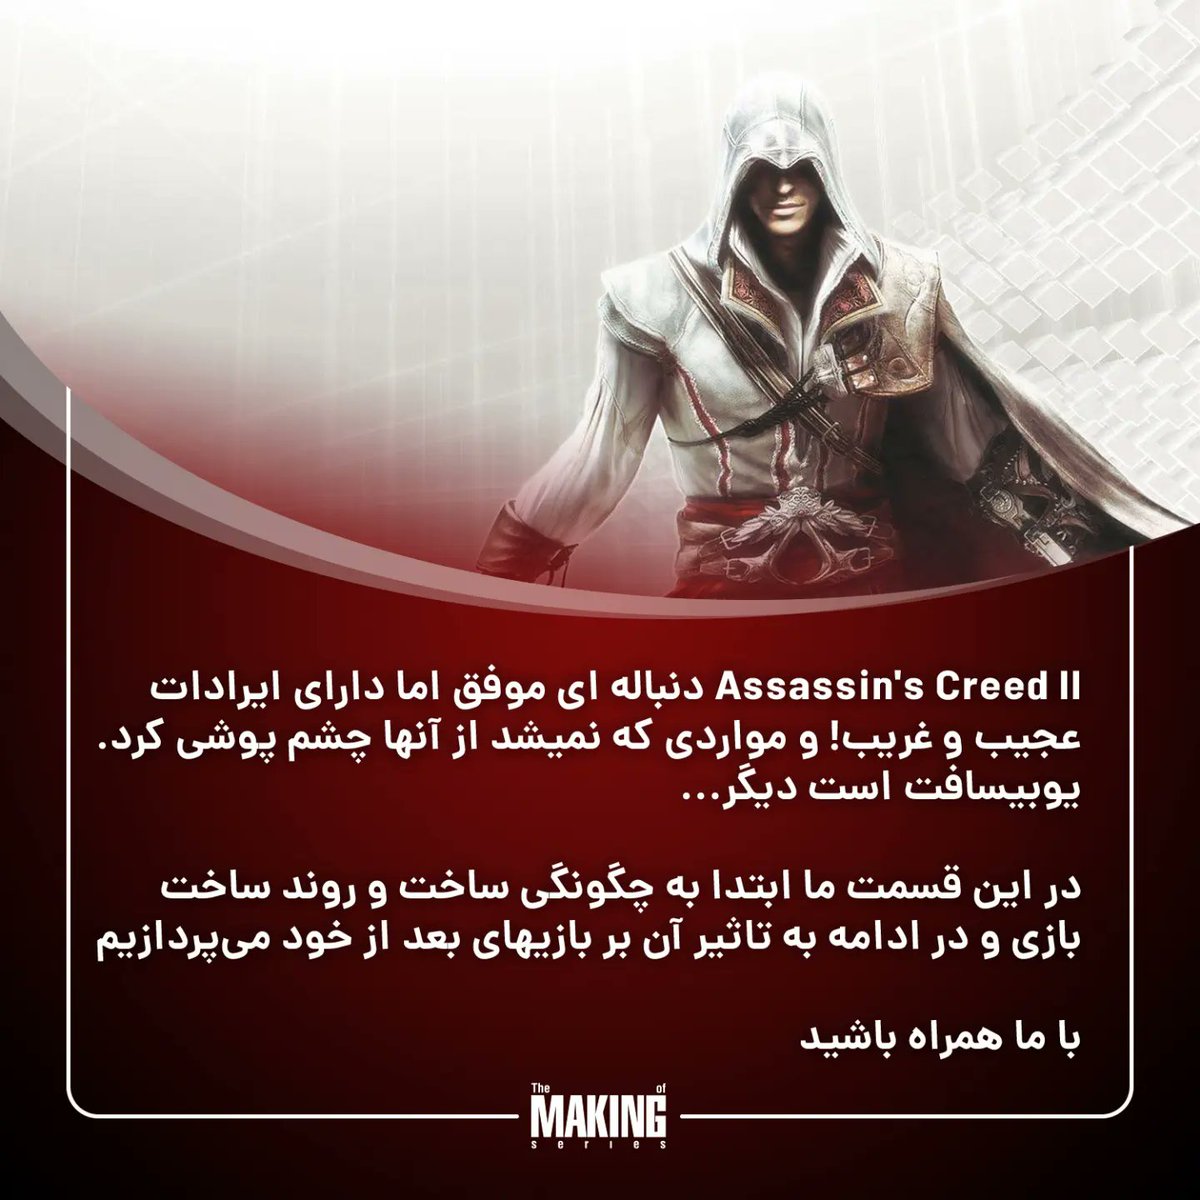 قسمت نهم سری پادکست
‌The Making Of
‌‌با محوریت بازی Assassin's Creed 2 و تاثیر آن بر بازیهای پس از خود
‌
‌ جمعه ۲۰ مرداد ماه ساعت ۸:۳۰ شب به وقت ایران
‌‌
#themakingofgames